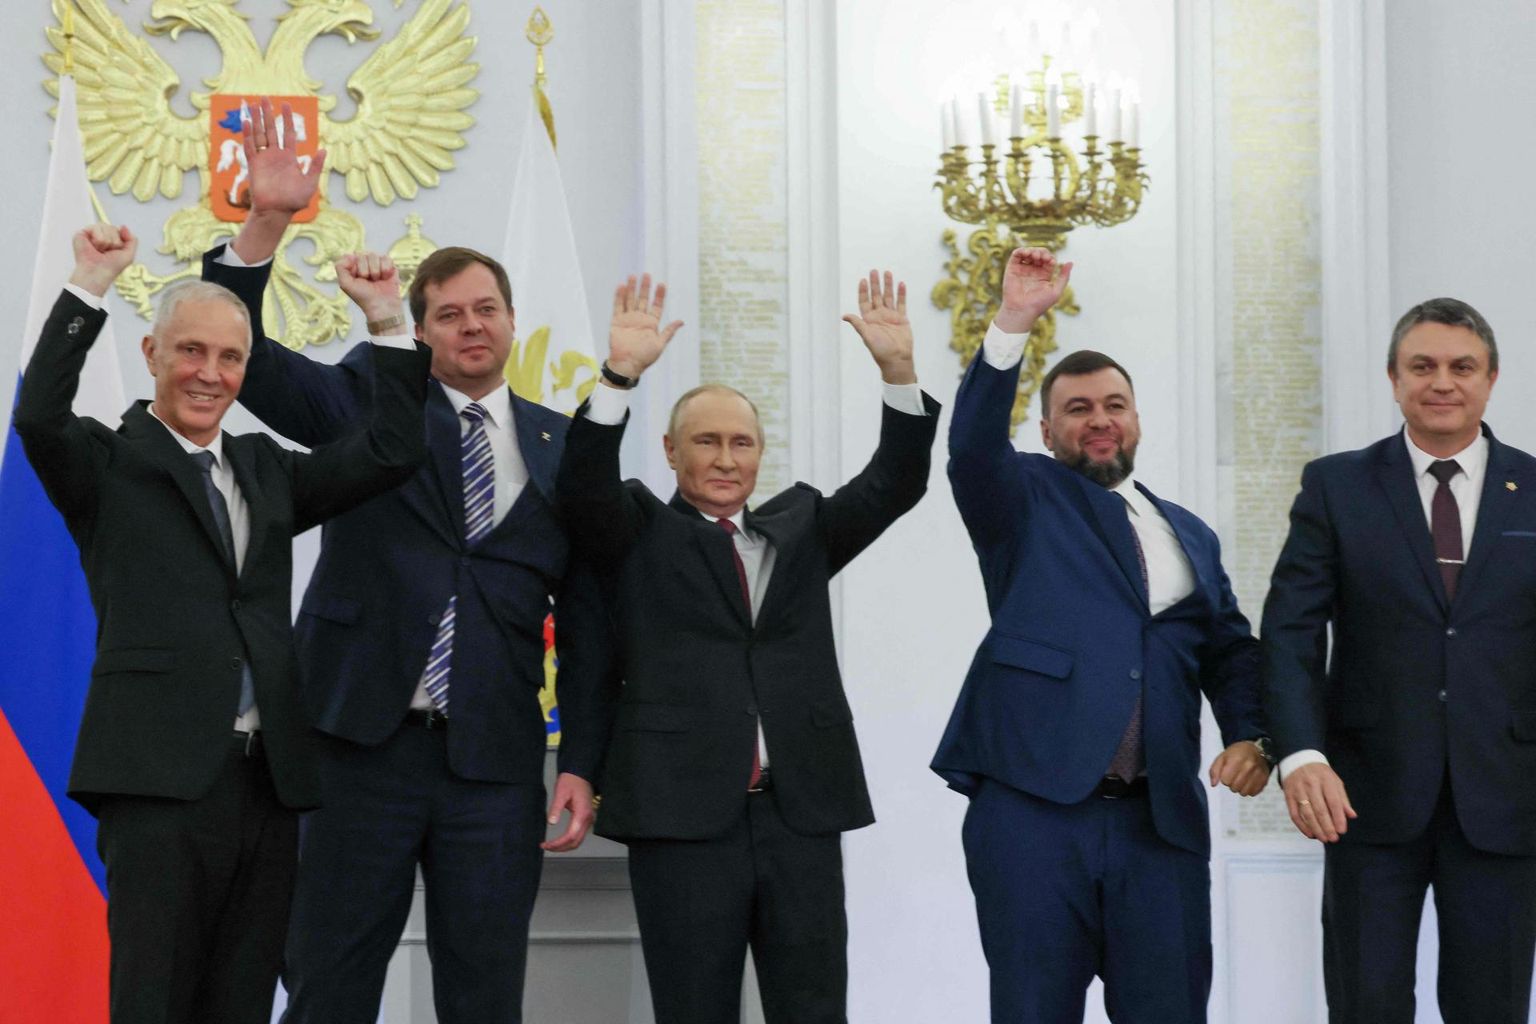 Venemaa riigipea Vladimir Putin ühes okupeeritud Ukraina alade nukuvalitsuste juhtidega rõõmustamas alade annekteerimise üle. 